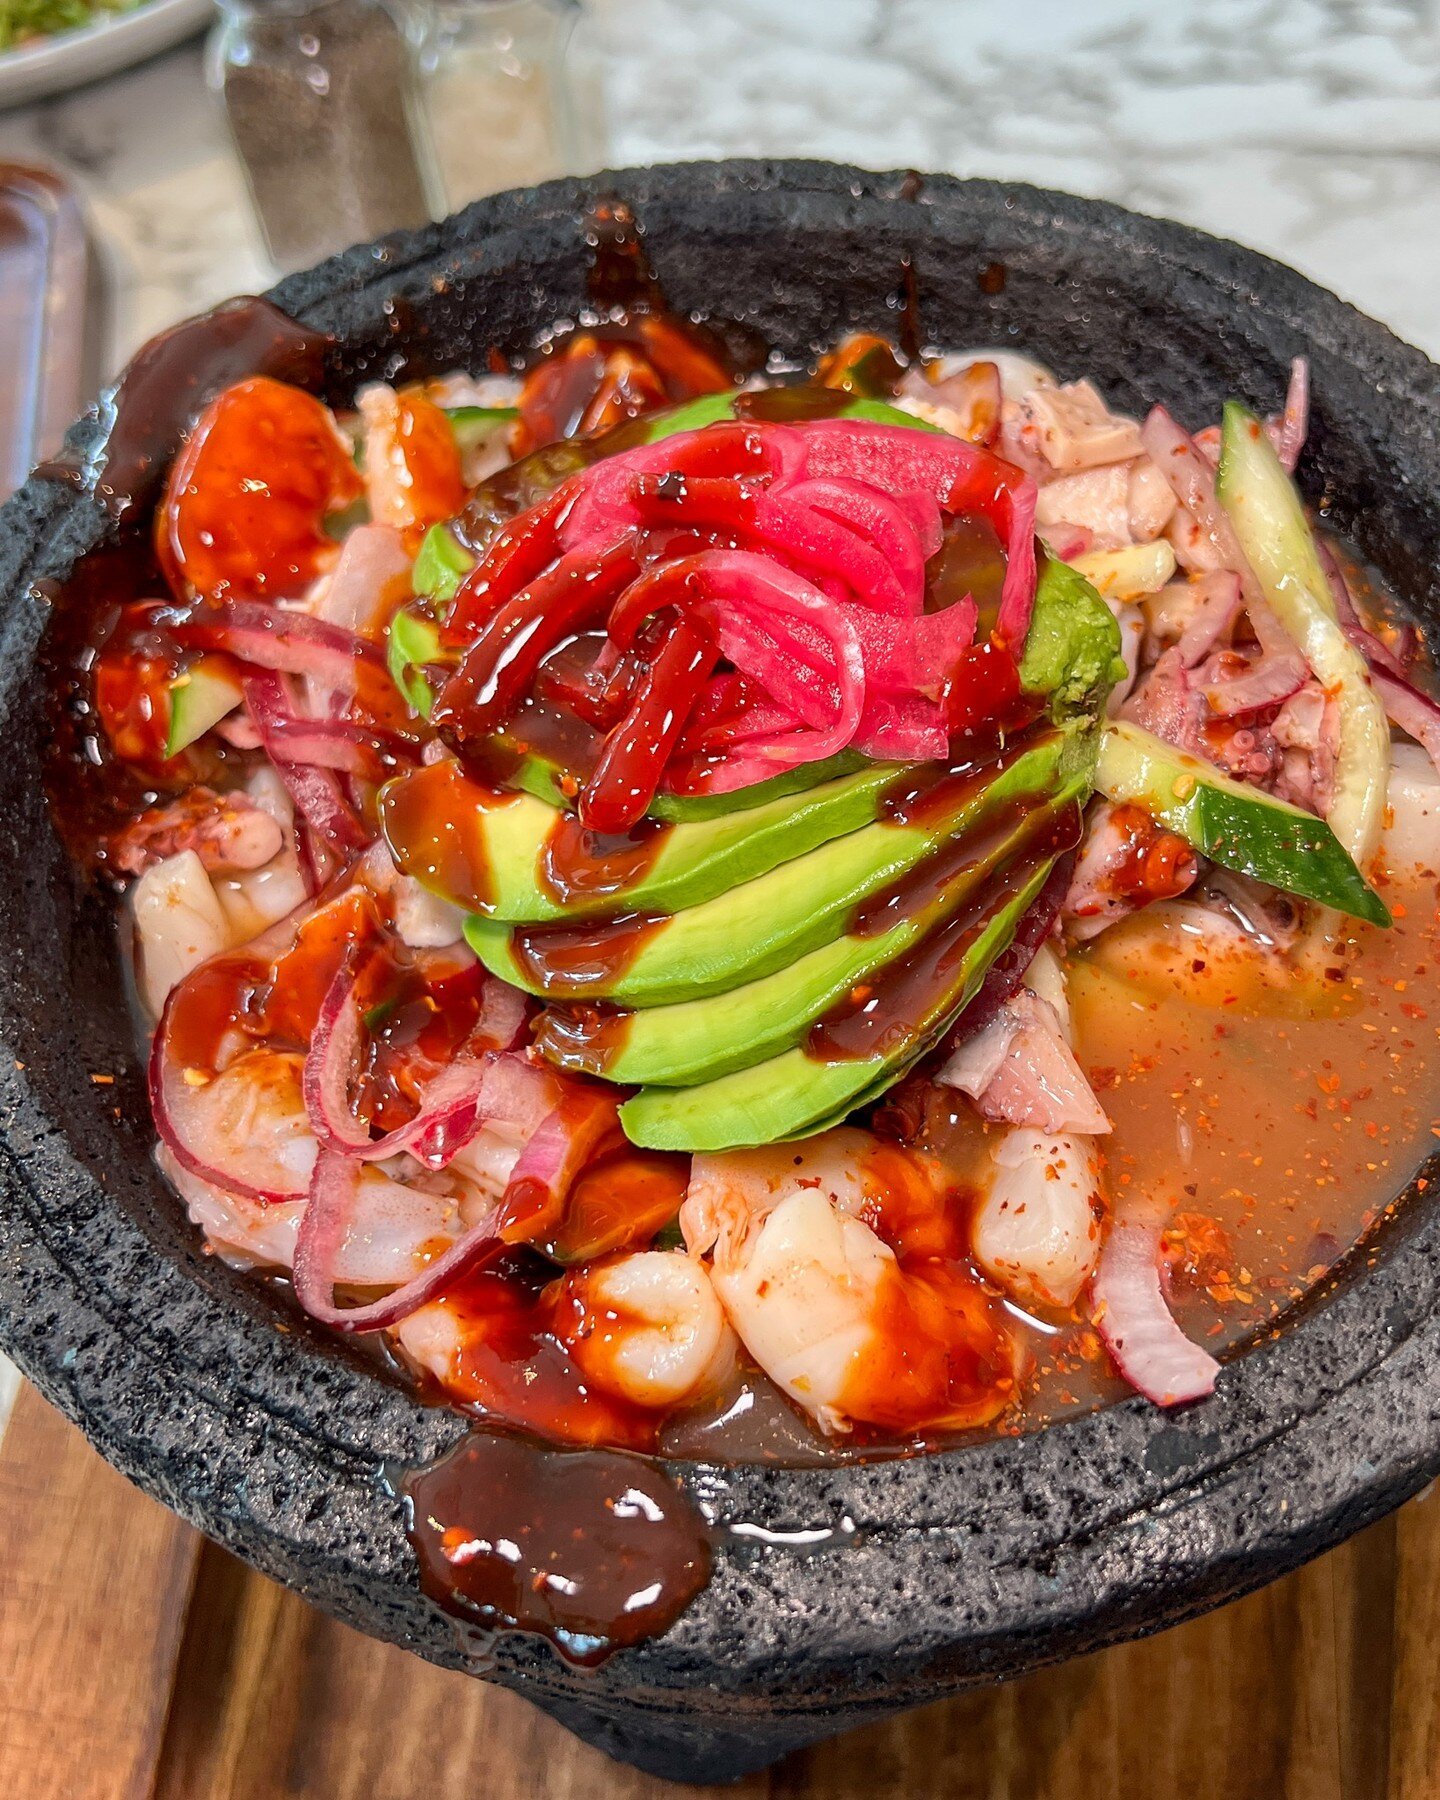 A seafood lovers paradise 🥰
 
#UnaMas #asheboronc #comindamexicana #salisbury